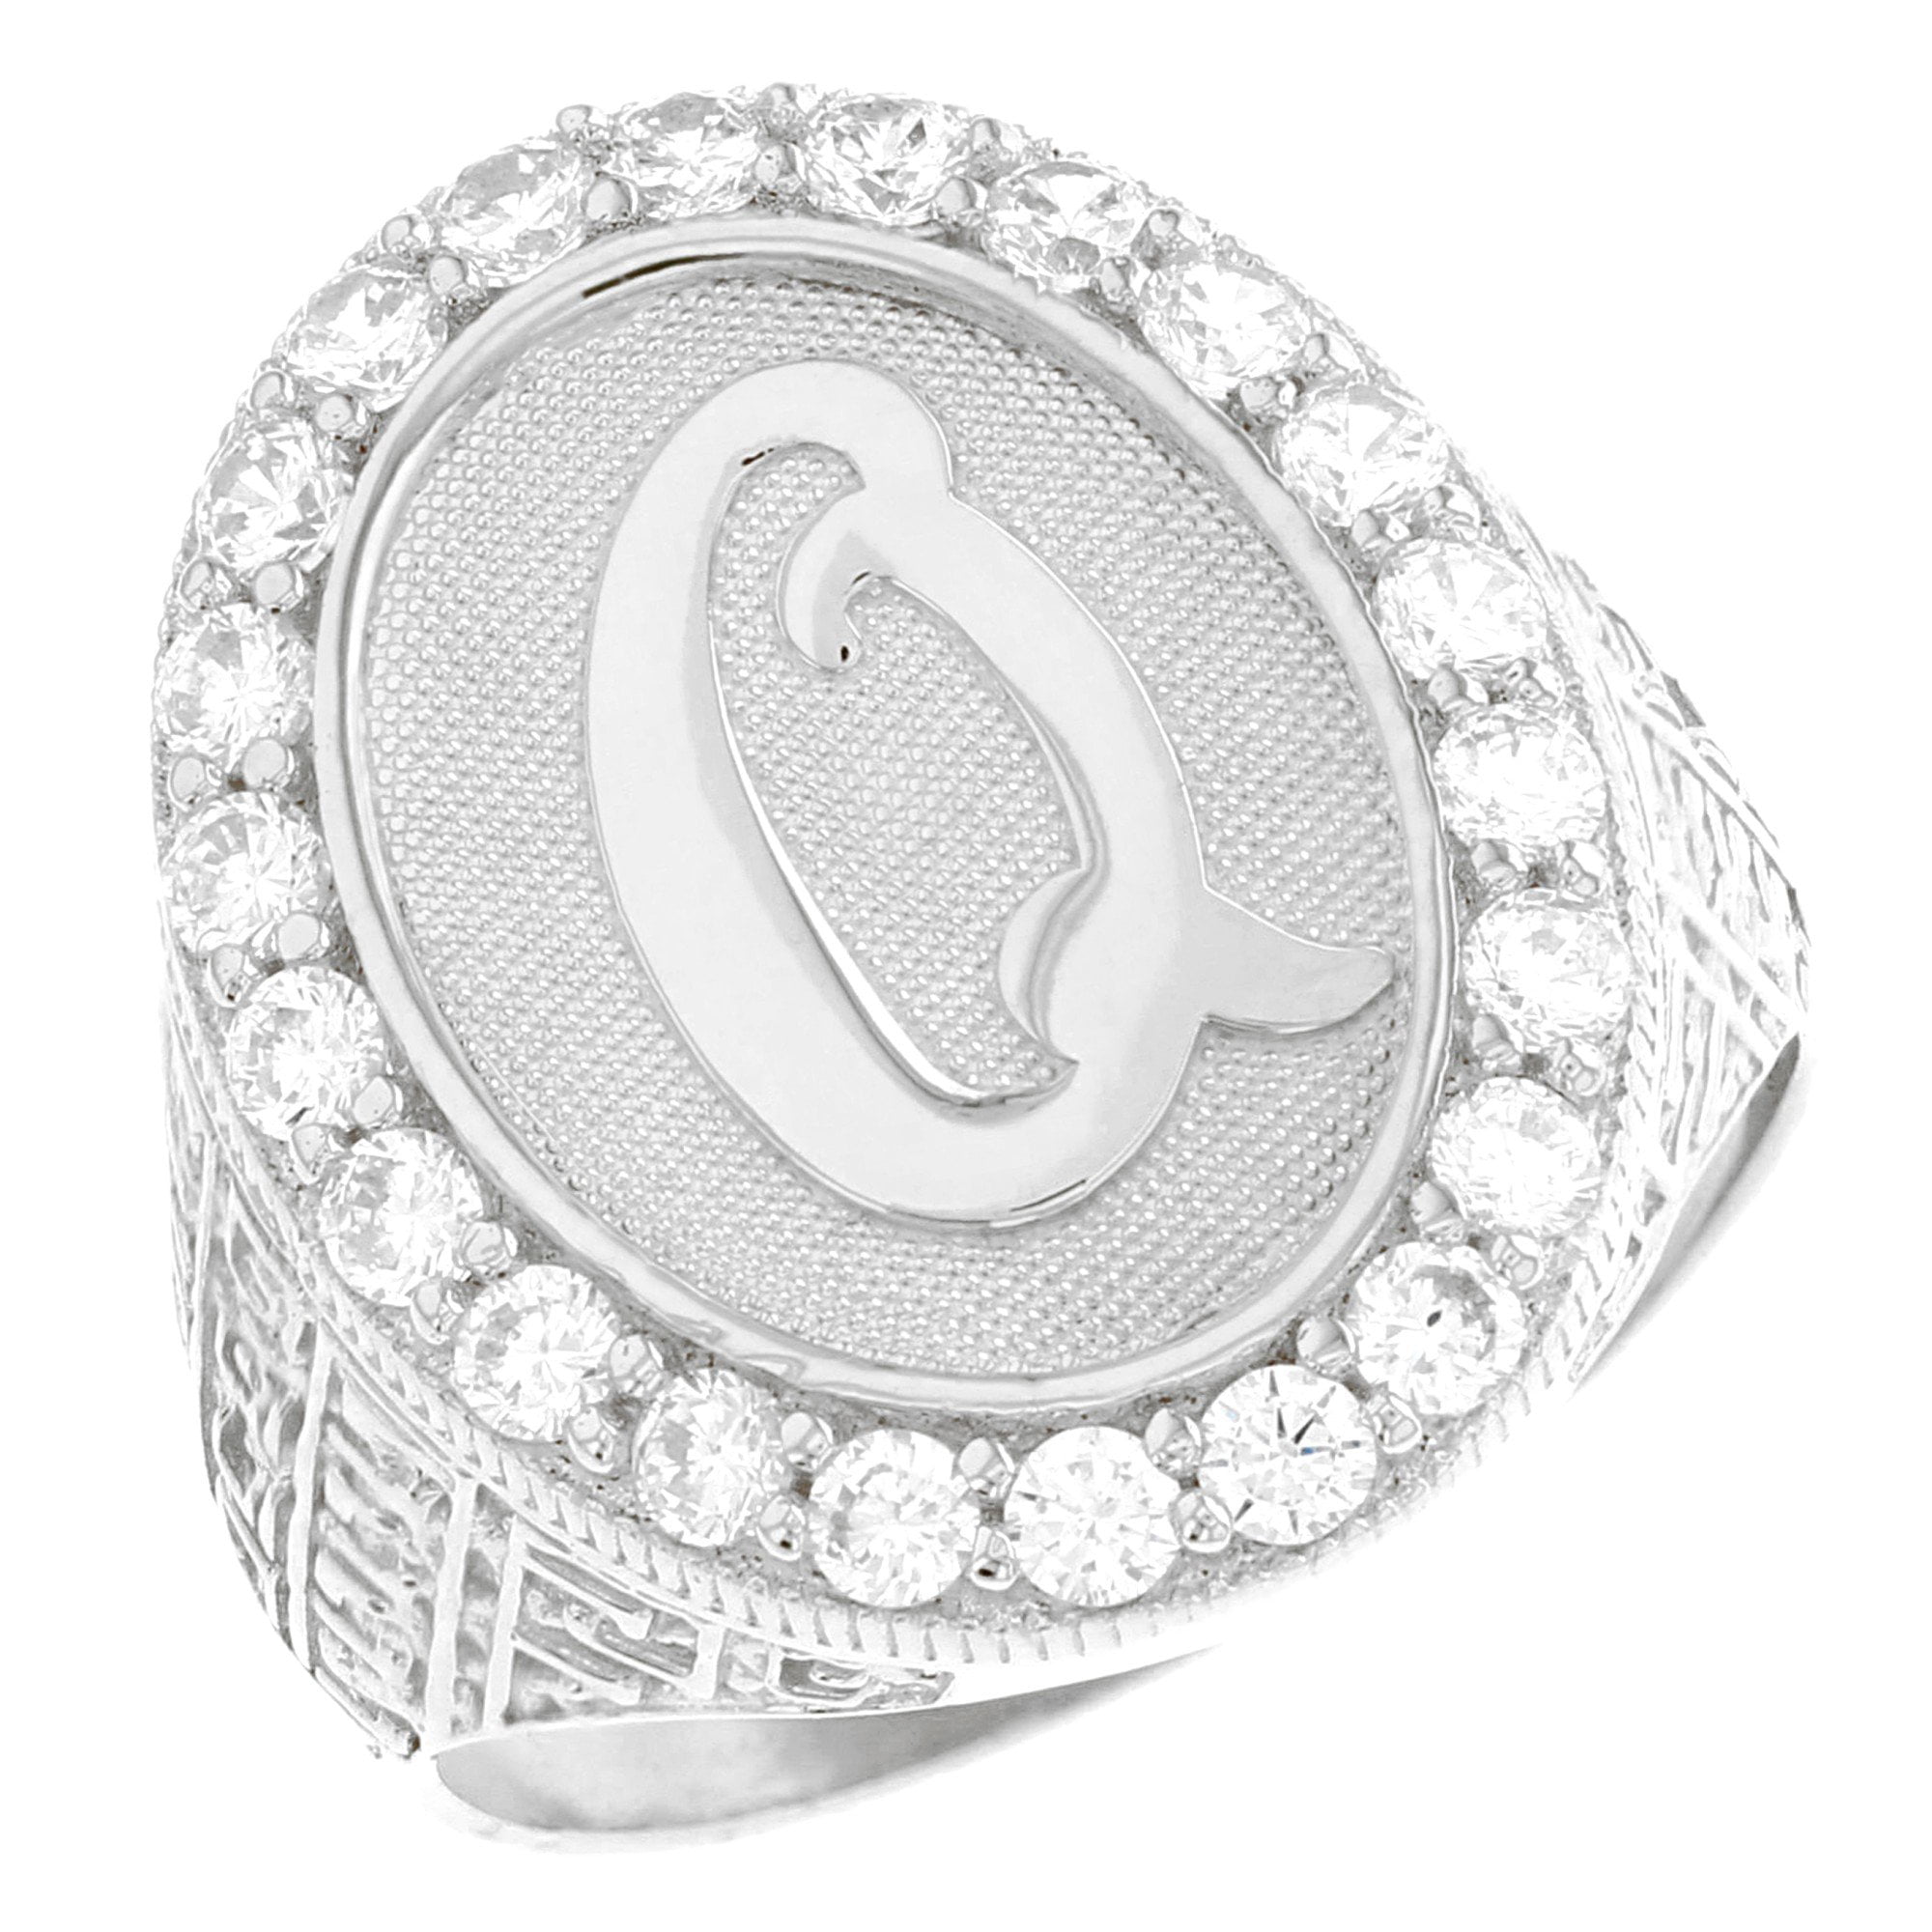 Jewelry Liquidation 10k White Gold White CZ Stunning Ladies Wedding Band Ring